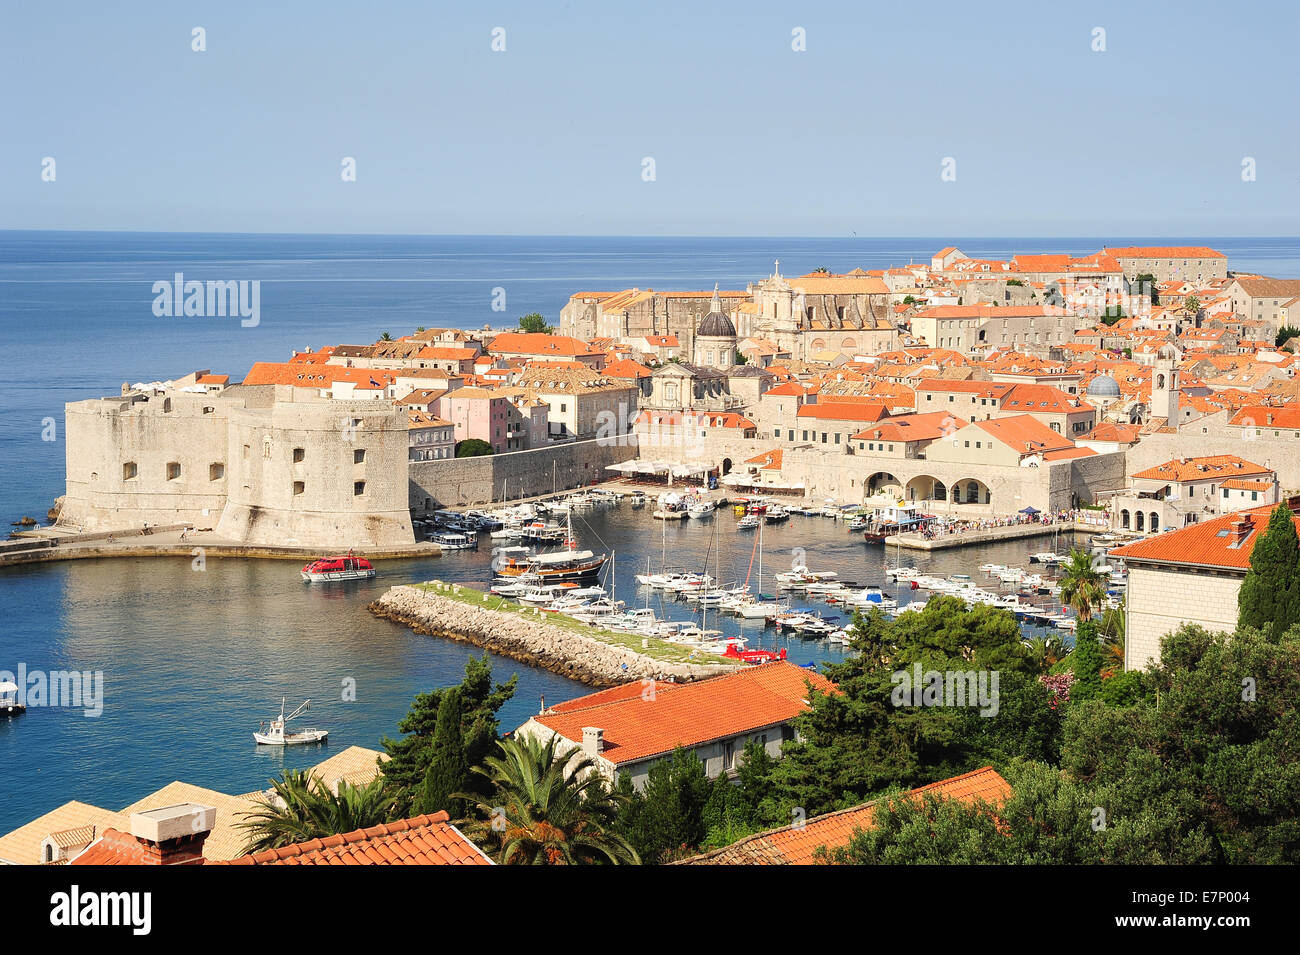 Castle, Adriatic, ancient, architecture, bright, city, cityscape, coast, coastline, Croatia, Balkans, Europe, Dalmatia, Dubrovni Stock Photo